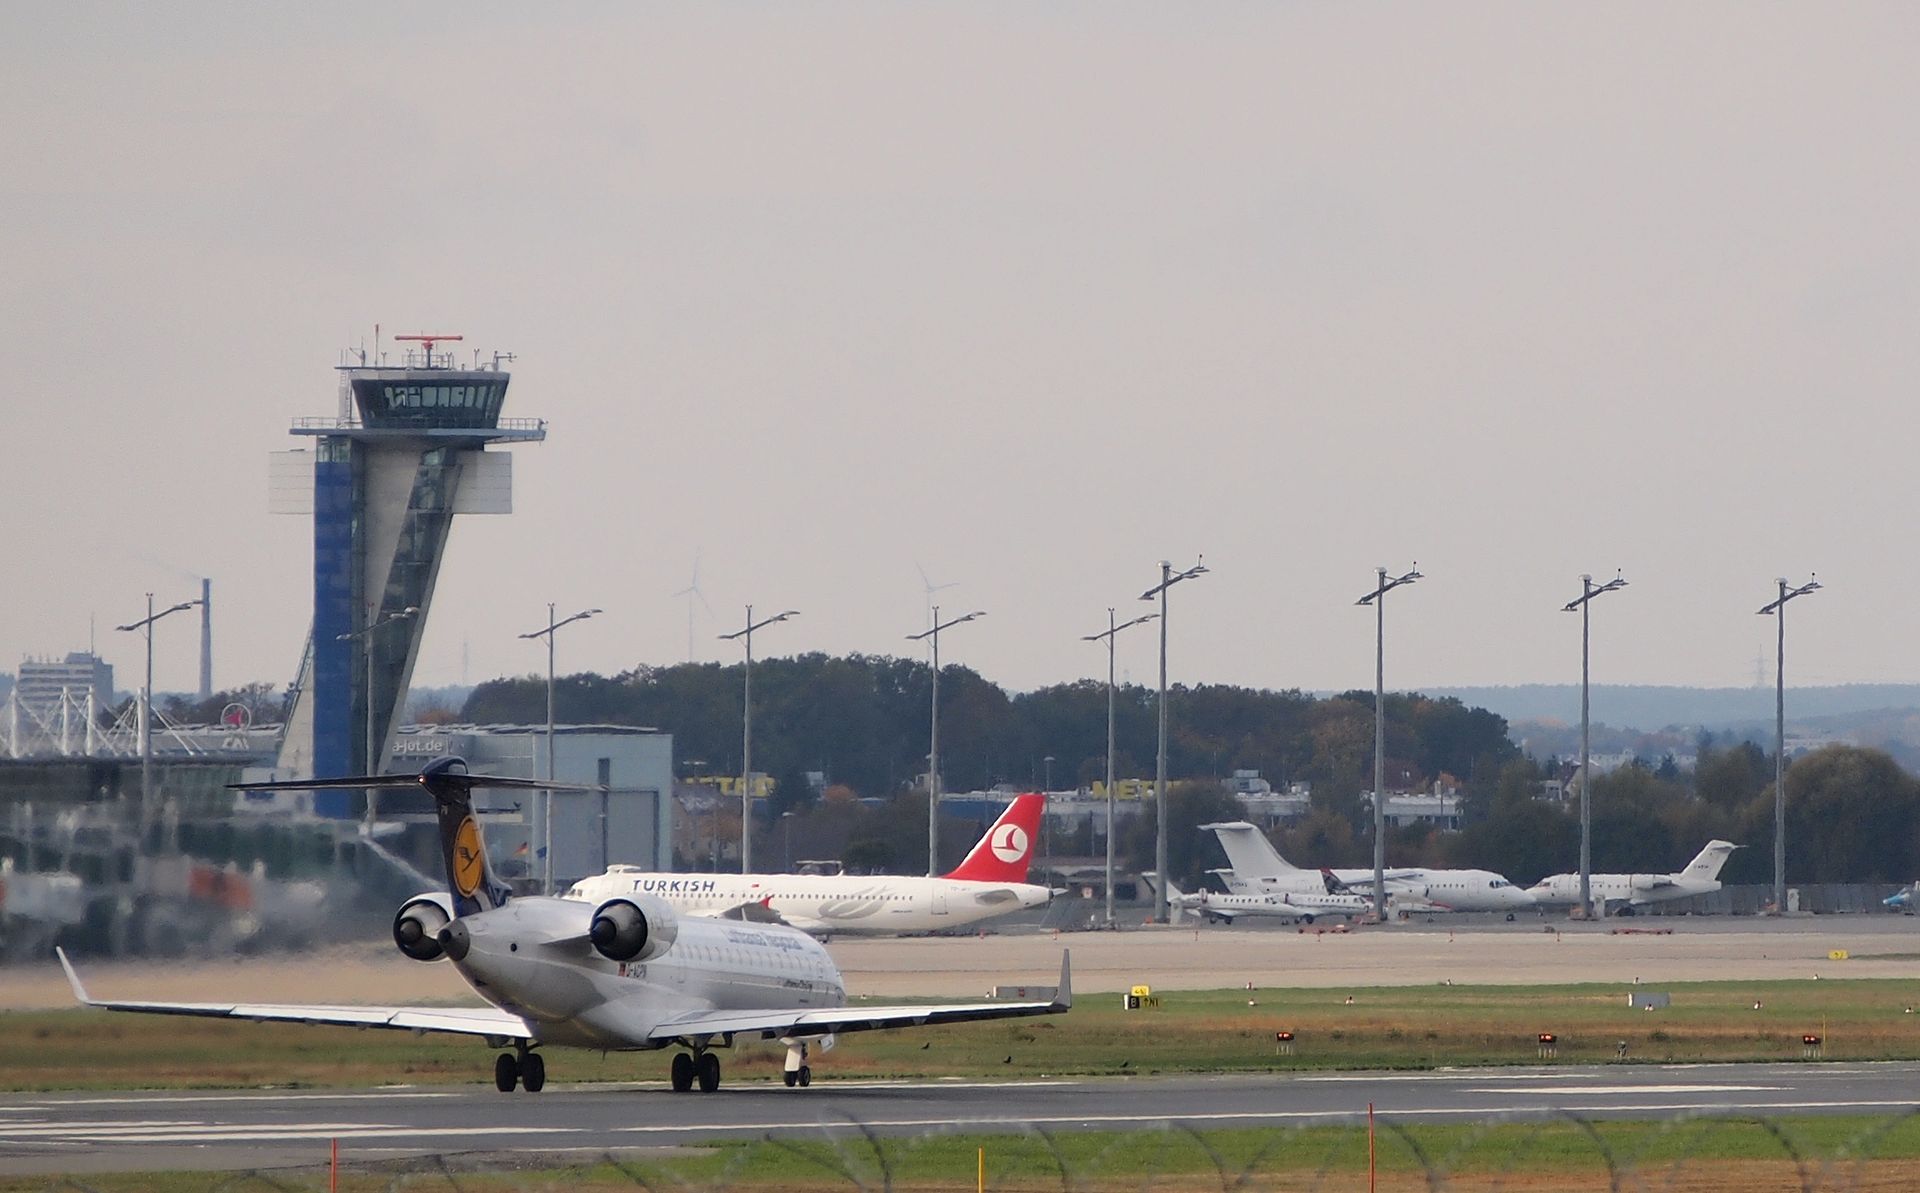 CRJ700 during takeoff at Nuremberg Airport